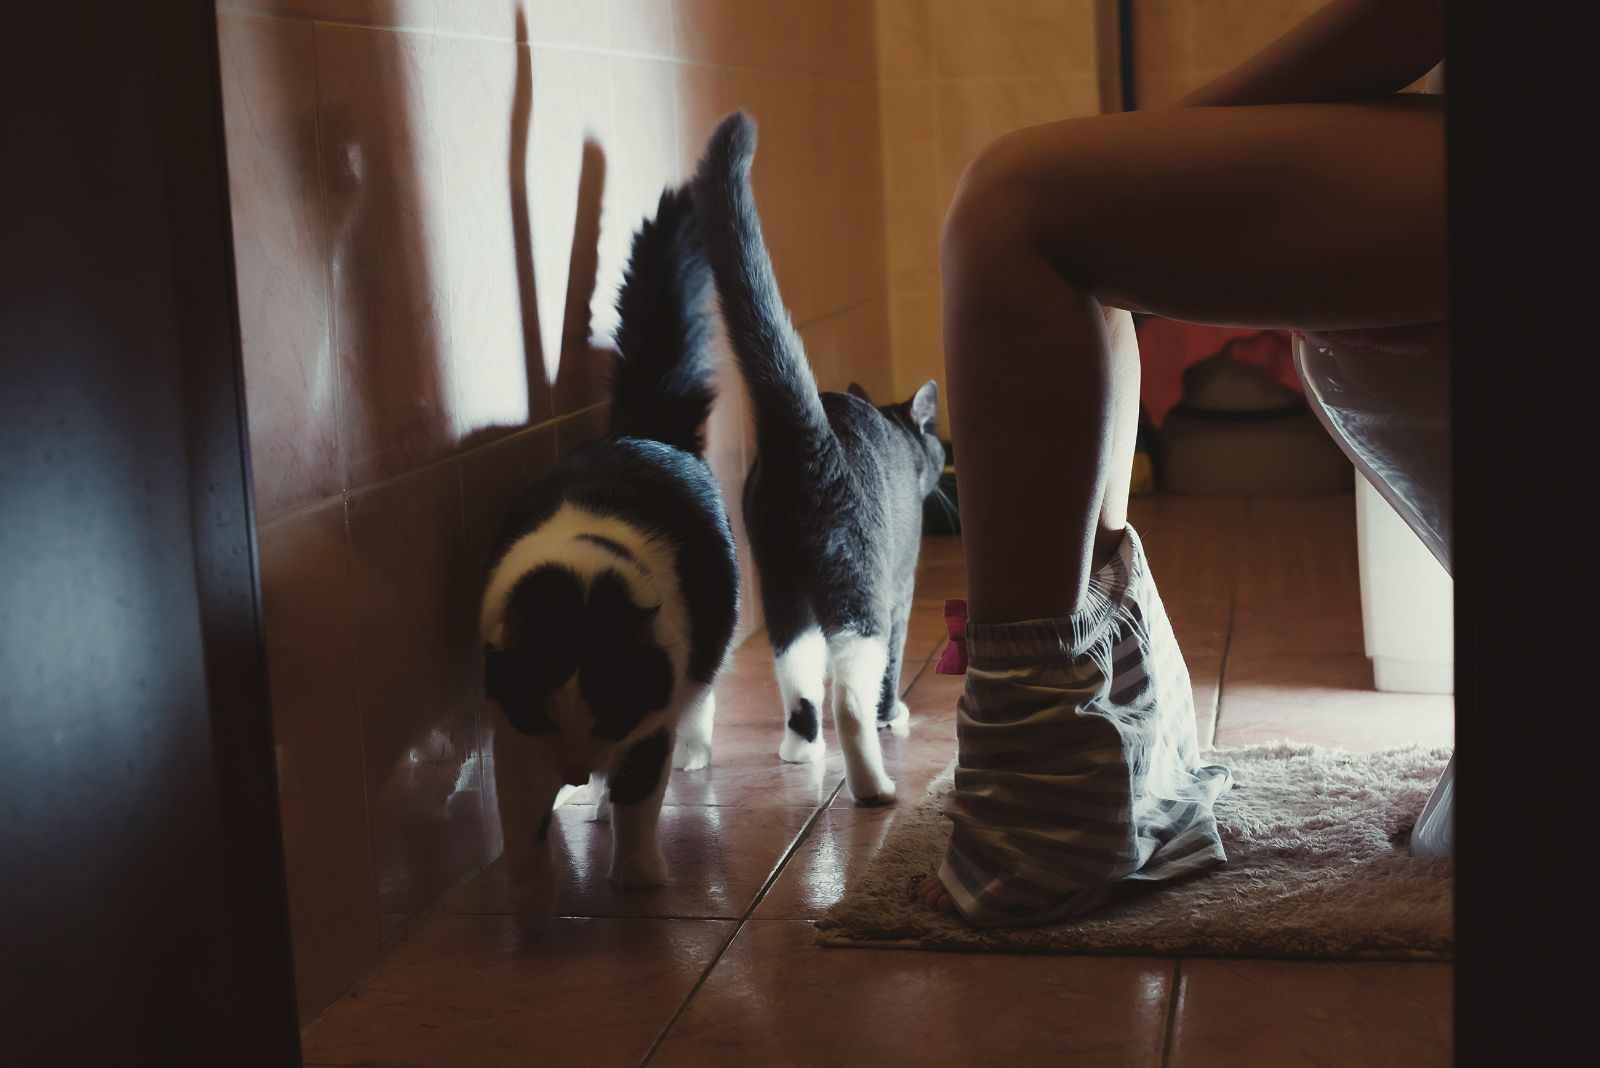 Katten lopen door de badkamer terwijl de vrouw op een kopje zit